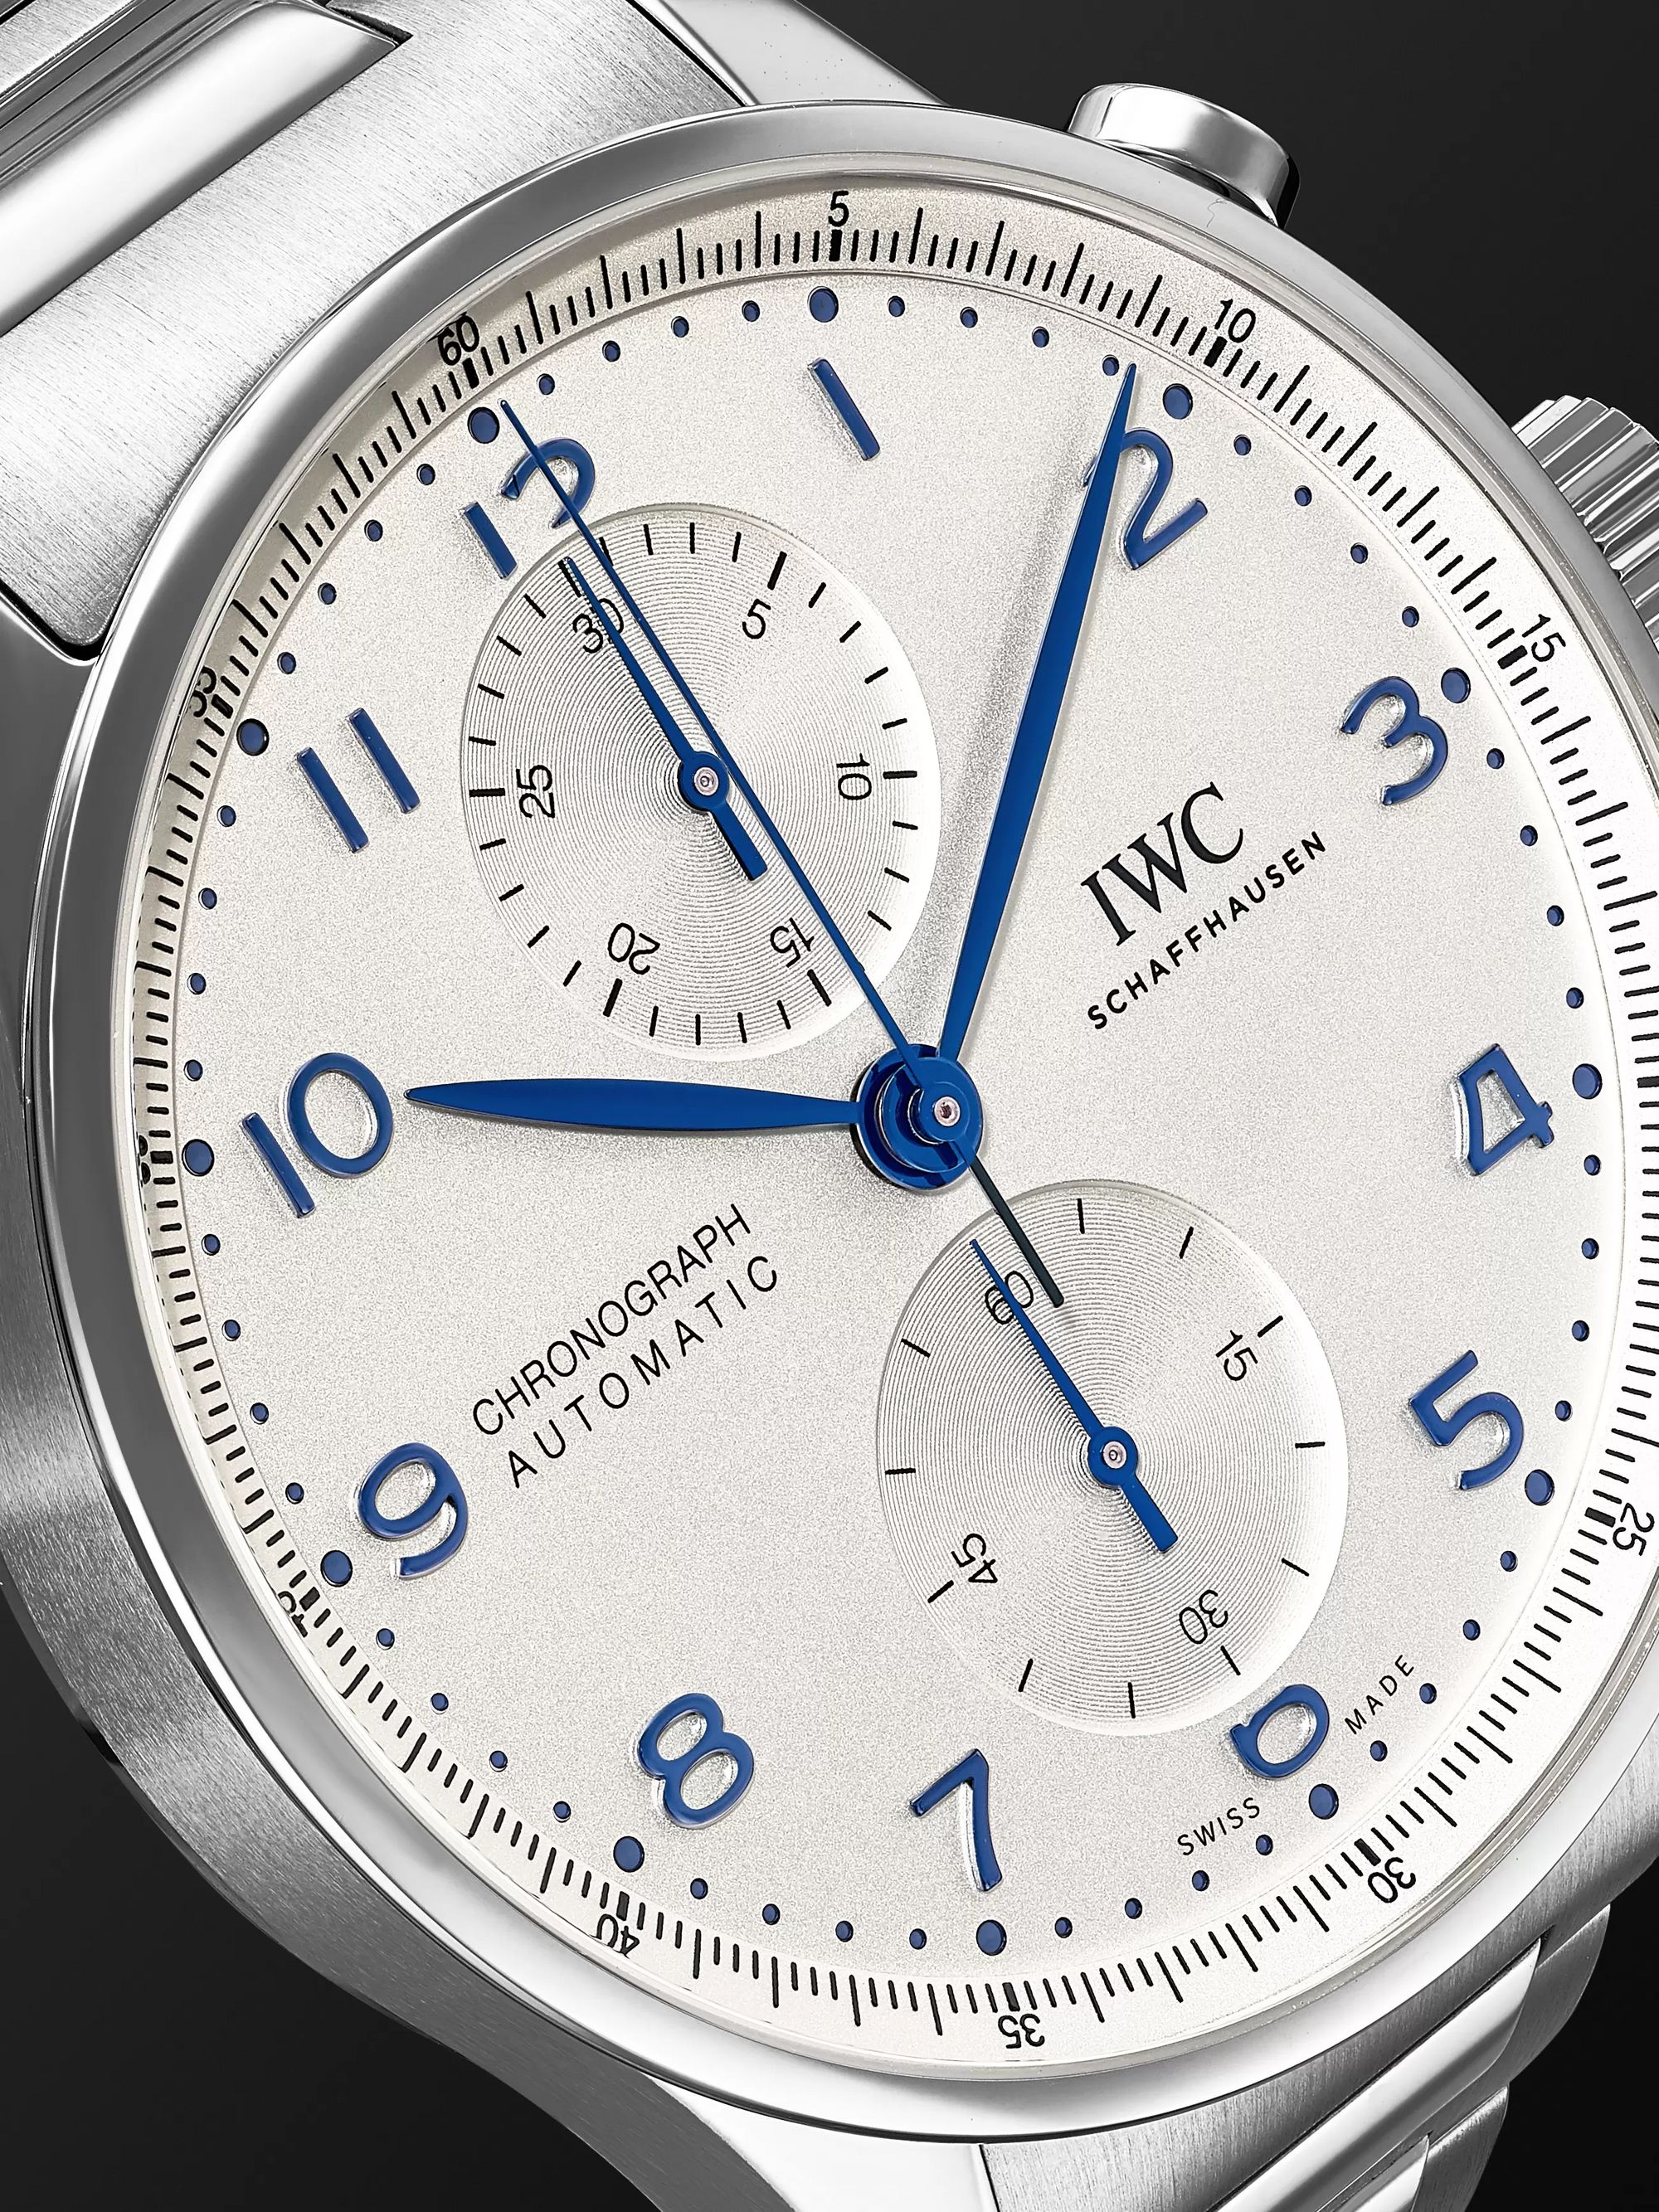 IWC SCHAFFHAUSEN Portugieser Chronograph 41mm Stainless Steel Watch, Ref. No. IW371617